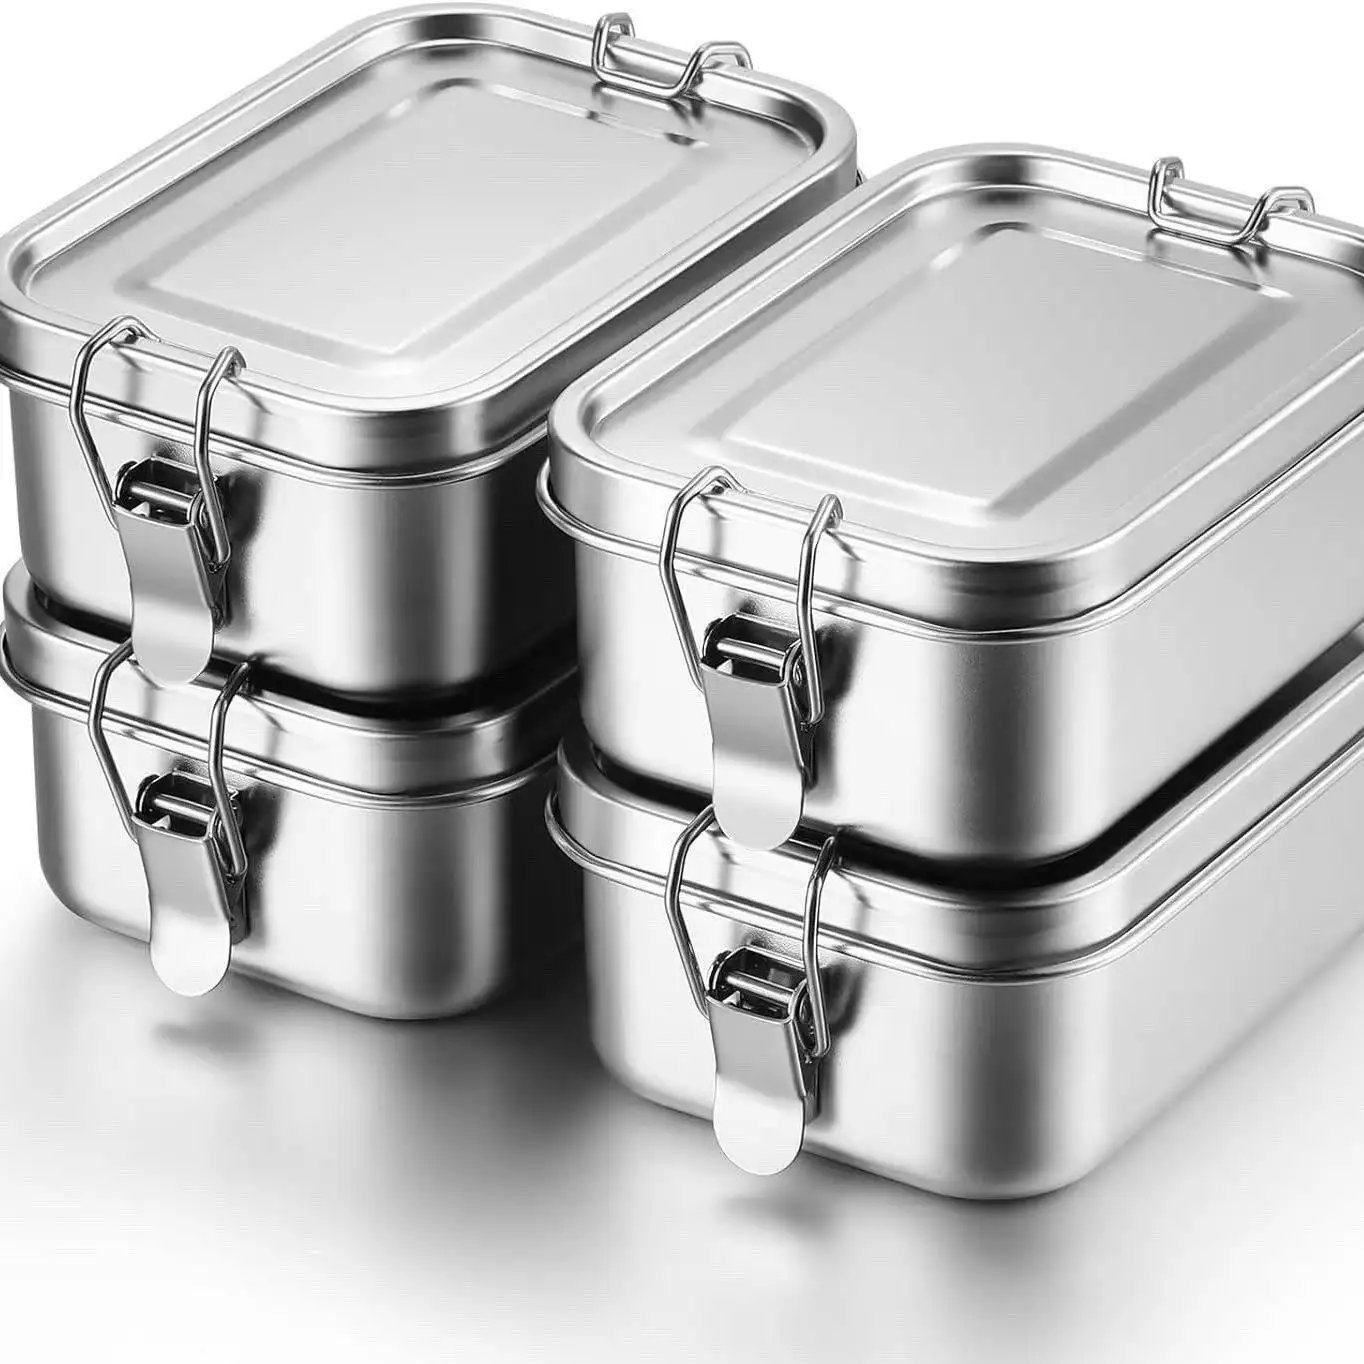 Ailingalaxy contenitore Bento scatola pranzo in acciaio inox senza vano 3 scomparti Bento Lunchbox per bambini